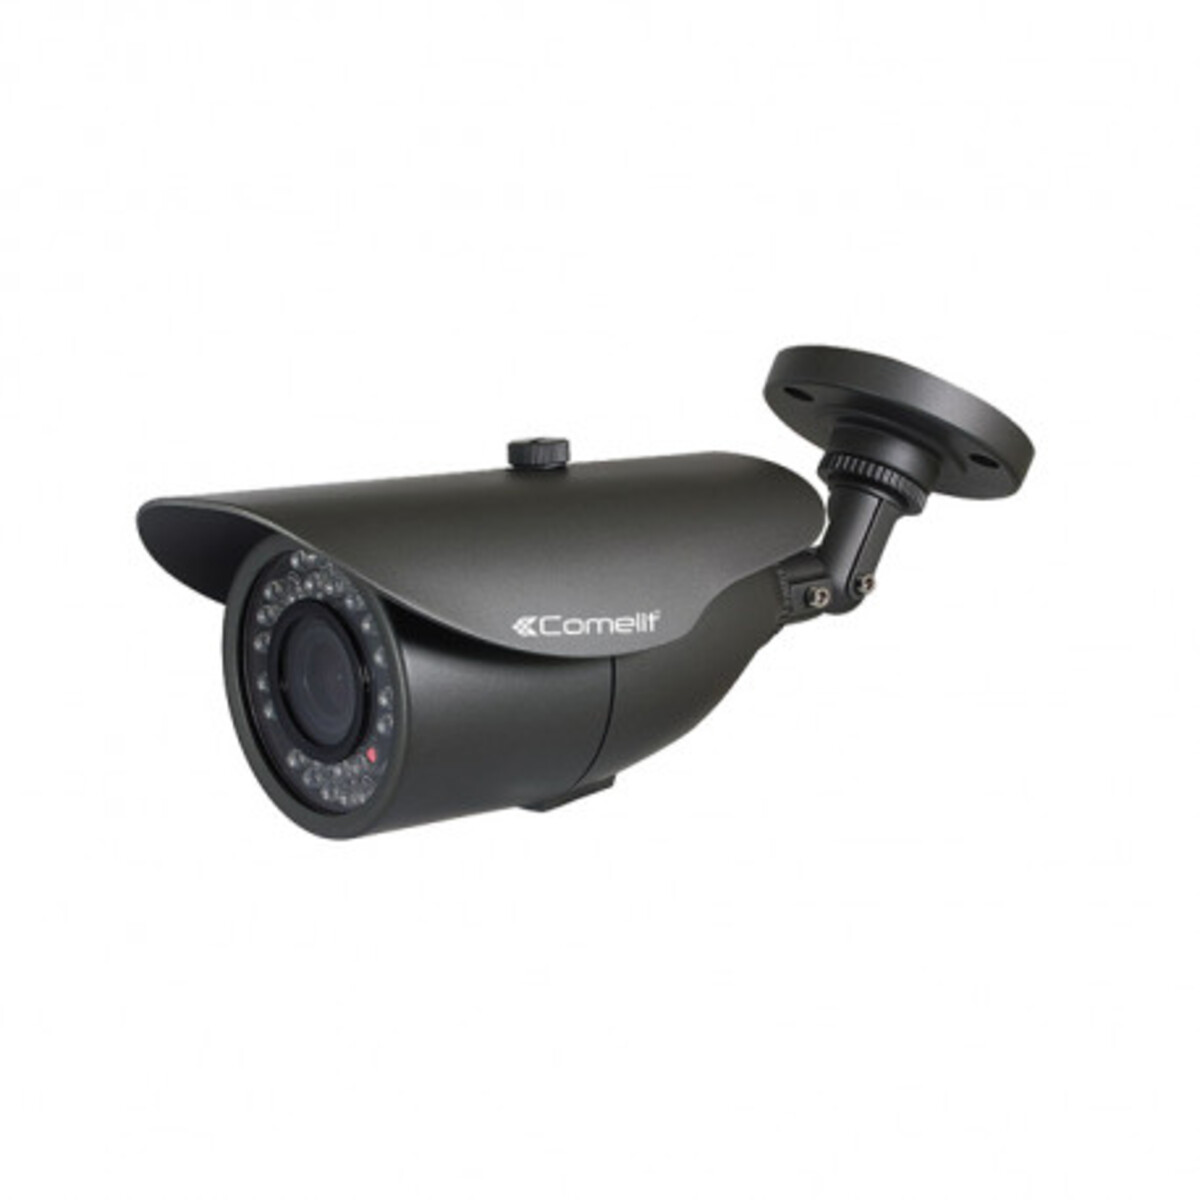 Caméra ahd all-in-one 5mp de vidéosurveillance - optique 2.8-12 mm - ahcam614za - comelit